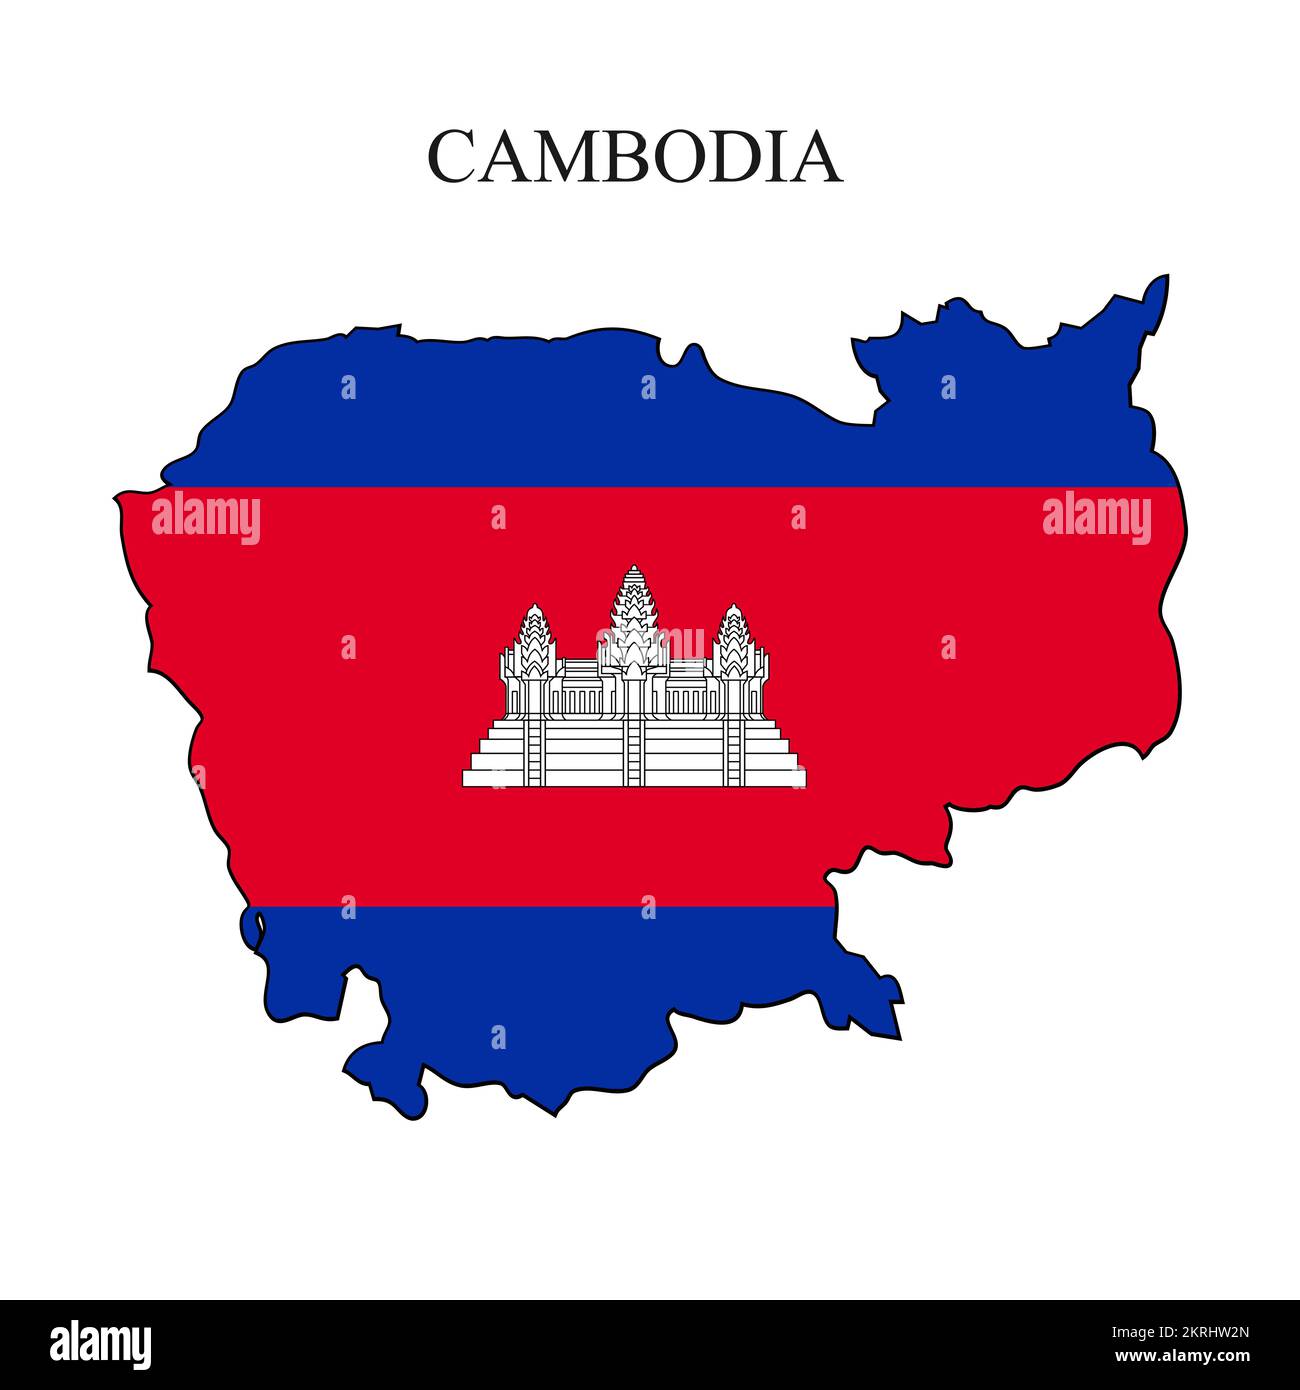 Darstellung des Kambodscha-Kartenvektors. Weltwirtschaft. Berühmtes Land. Südostasien Stock Vektor